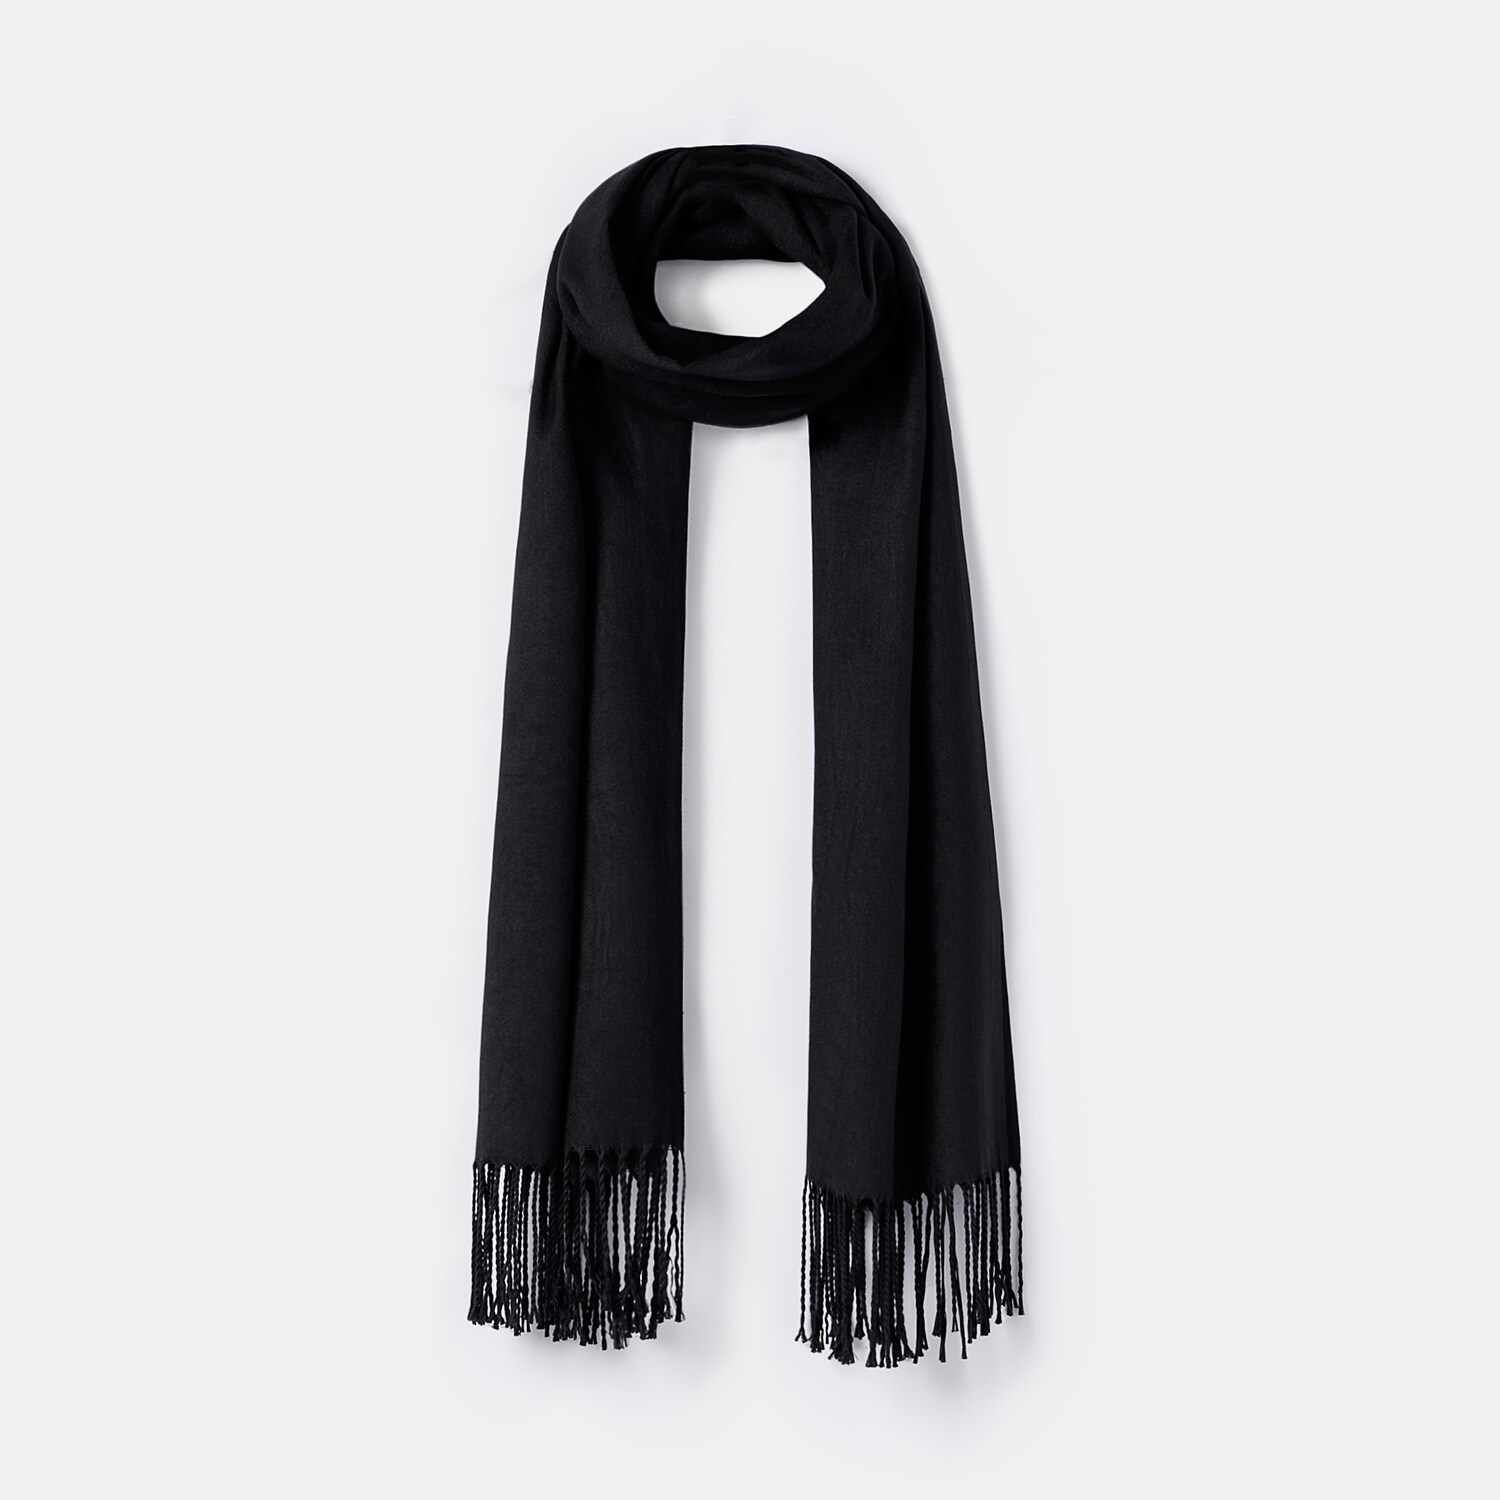 Mohito – Fular uni, cu franjuri – Negru Accessories > scarves 2023-10-02